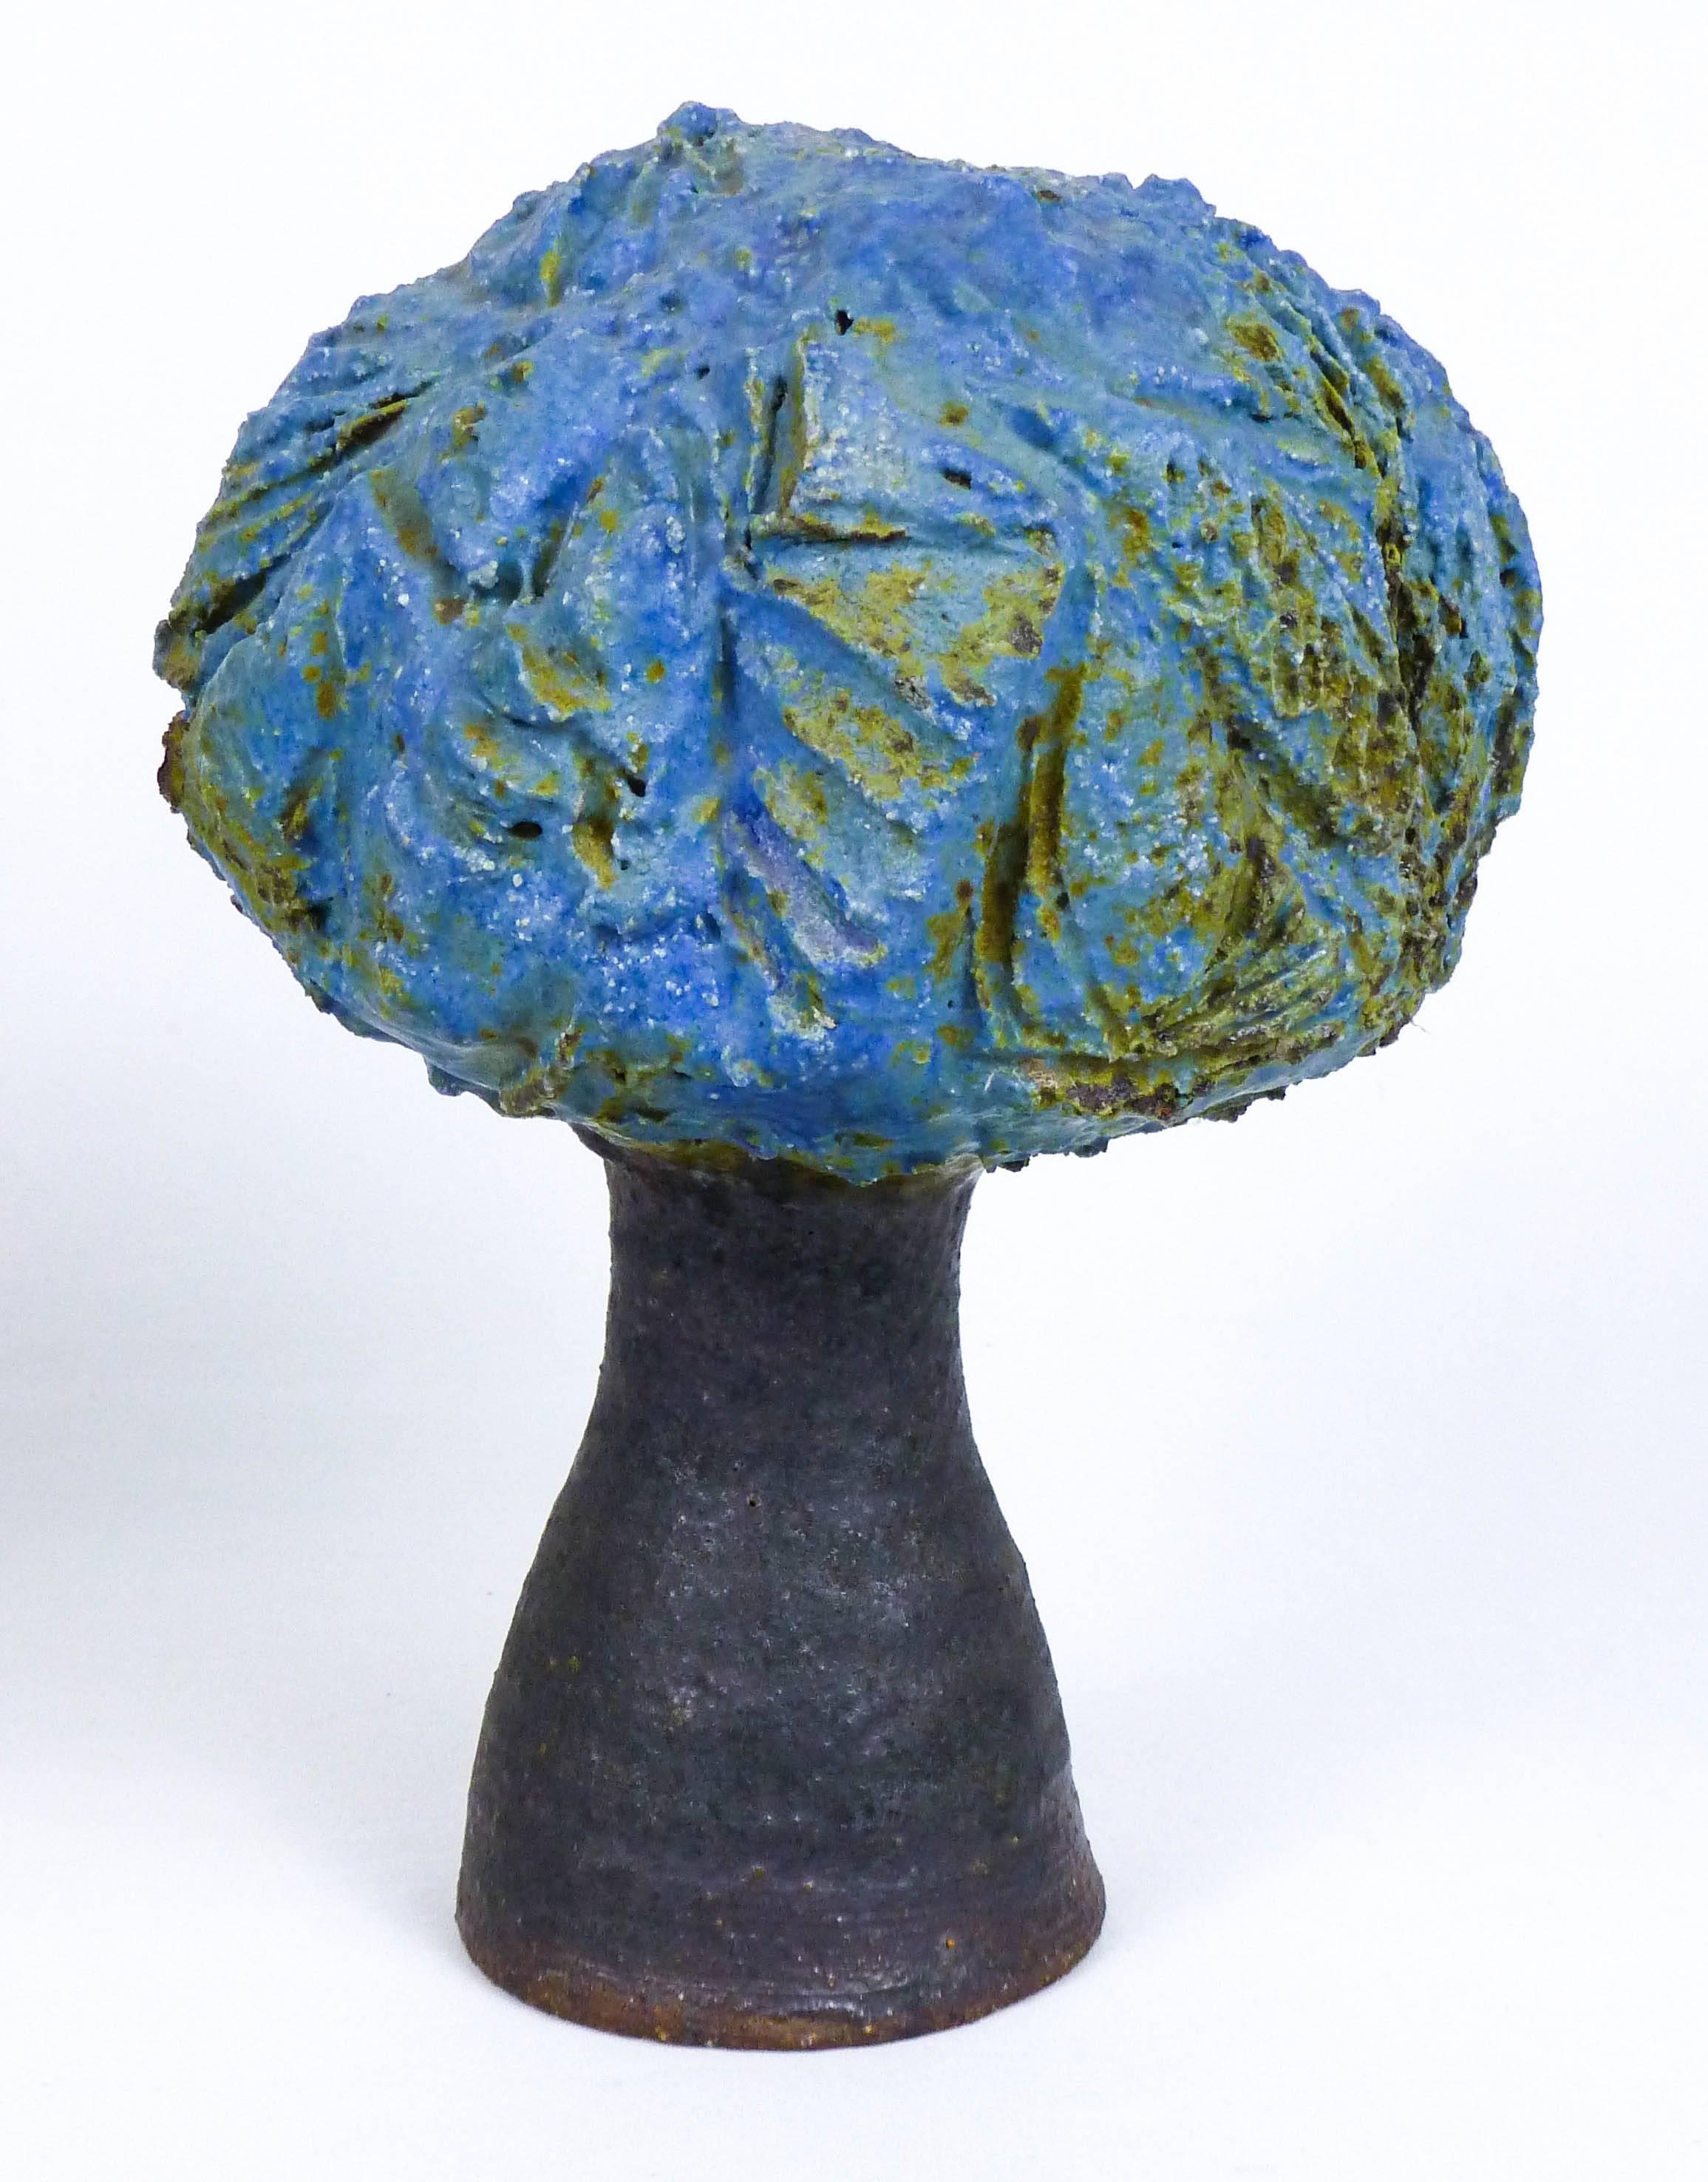 Tree Pot - Sculpture by Robert Arneson